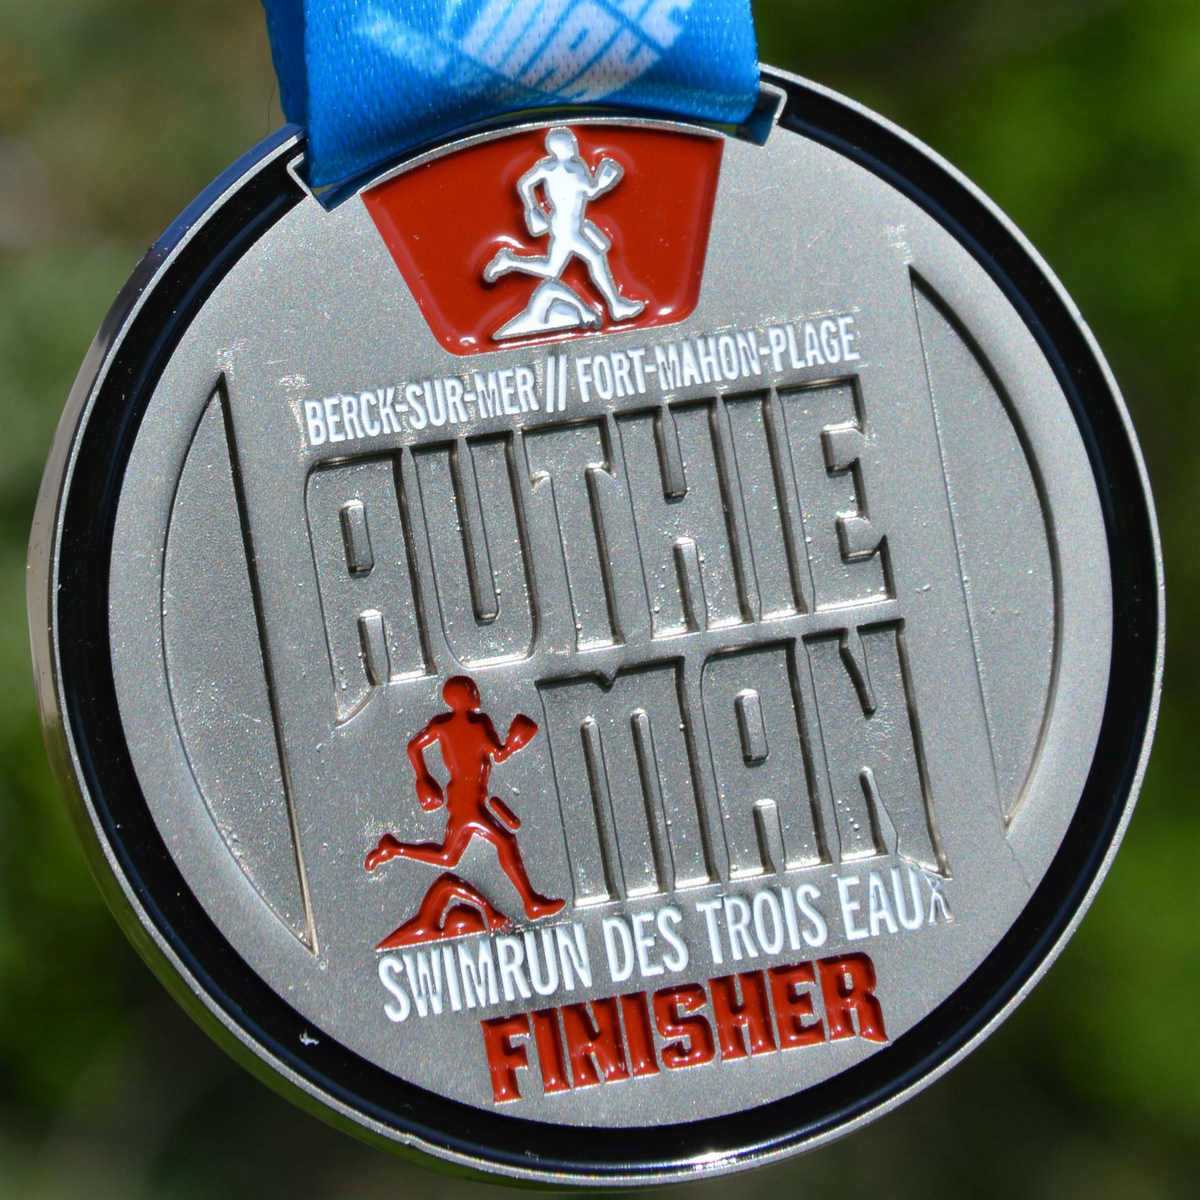 Médaille Finisher ronde réalisée pour le Swimrun des Trois Eaux - Berck-sur-mer - Fort-Mahon-Plage - AuthieMan